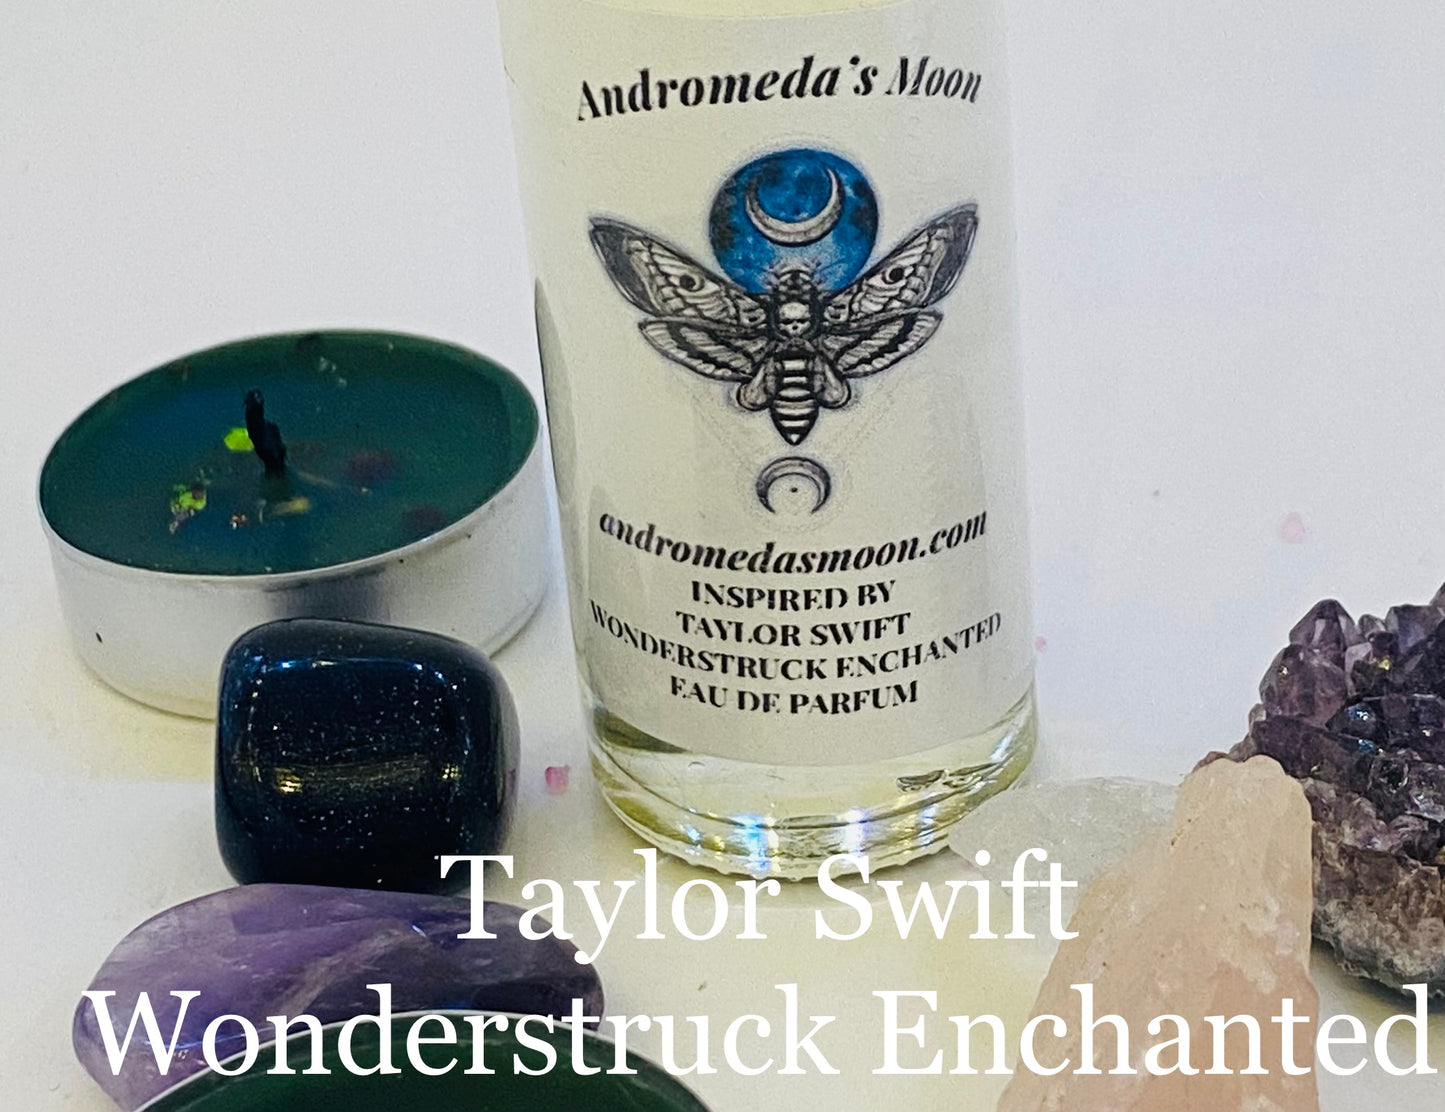 Inspired by Wonderstruck Enchanted Eau De Parfum by Taylor Swift